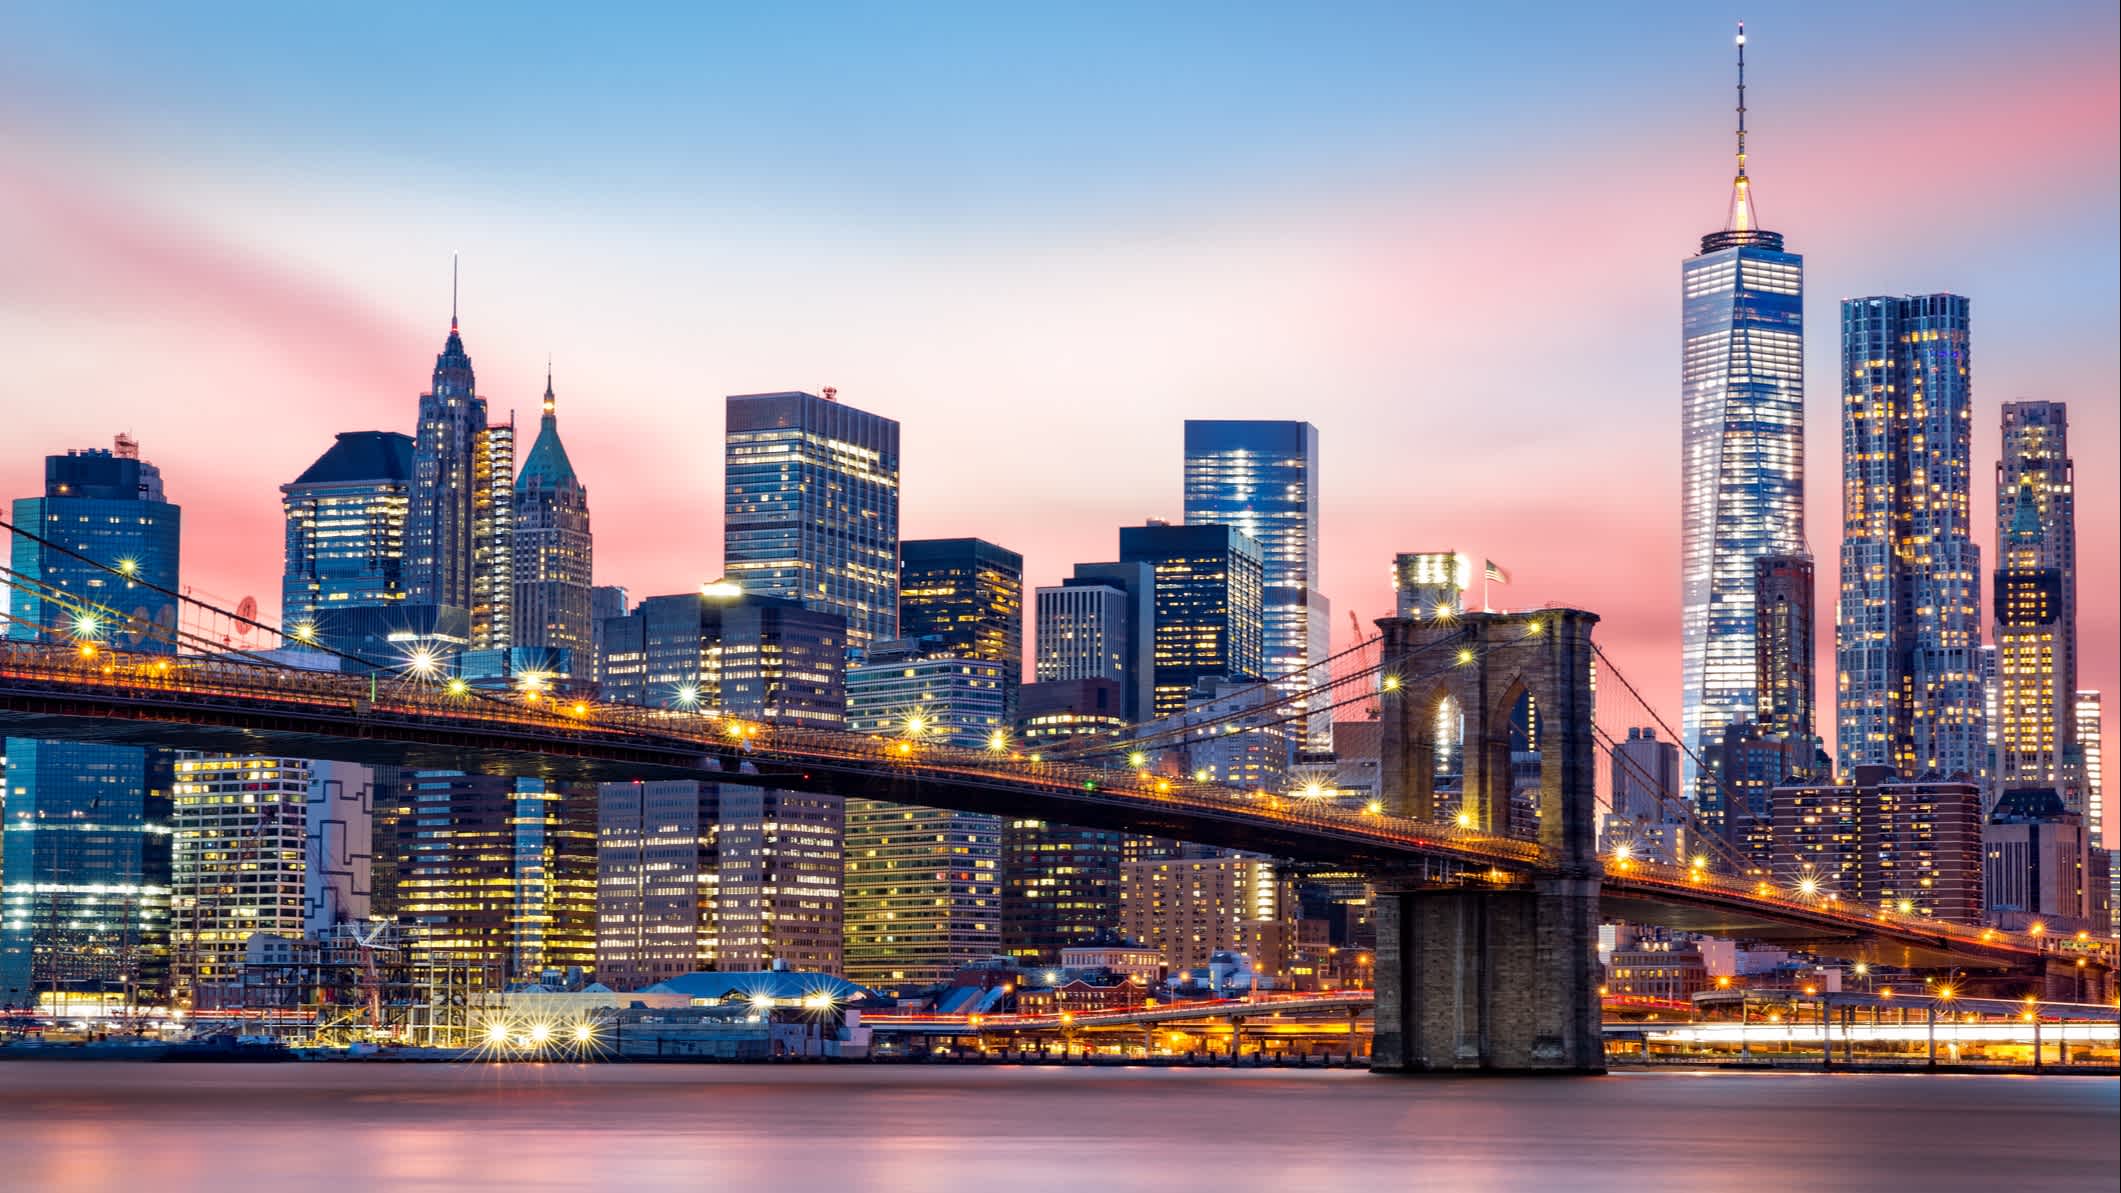 Brooklyn Bridge und die Skyline von Manhattan bei Sonnenuntergang, New York, USA. 

